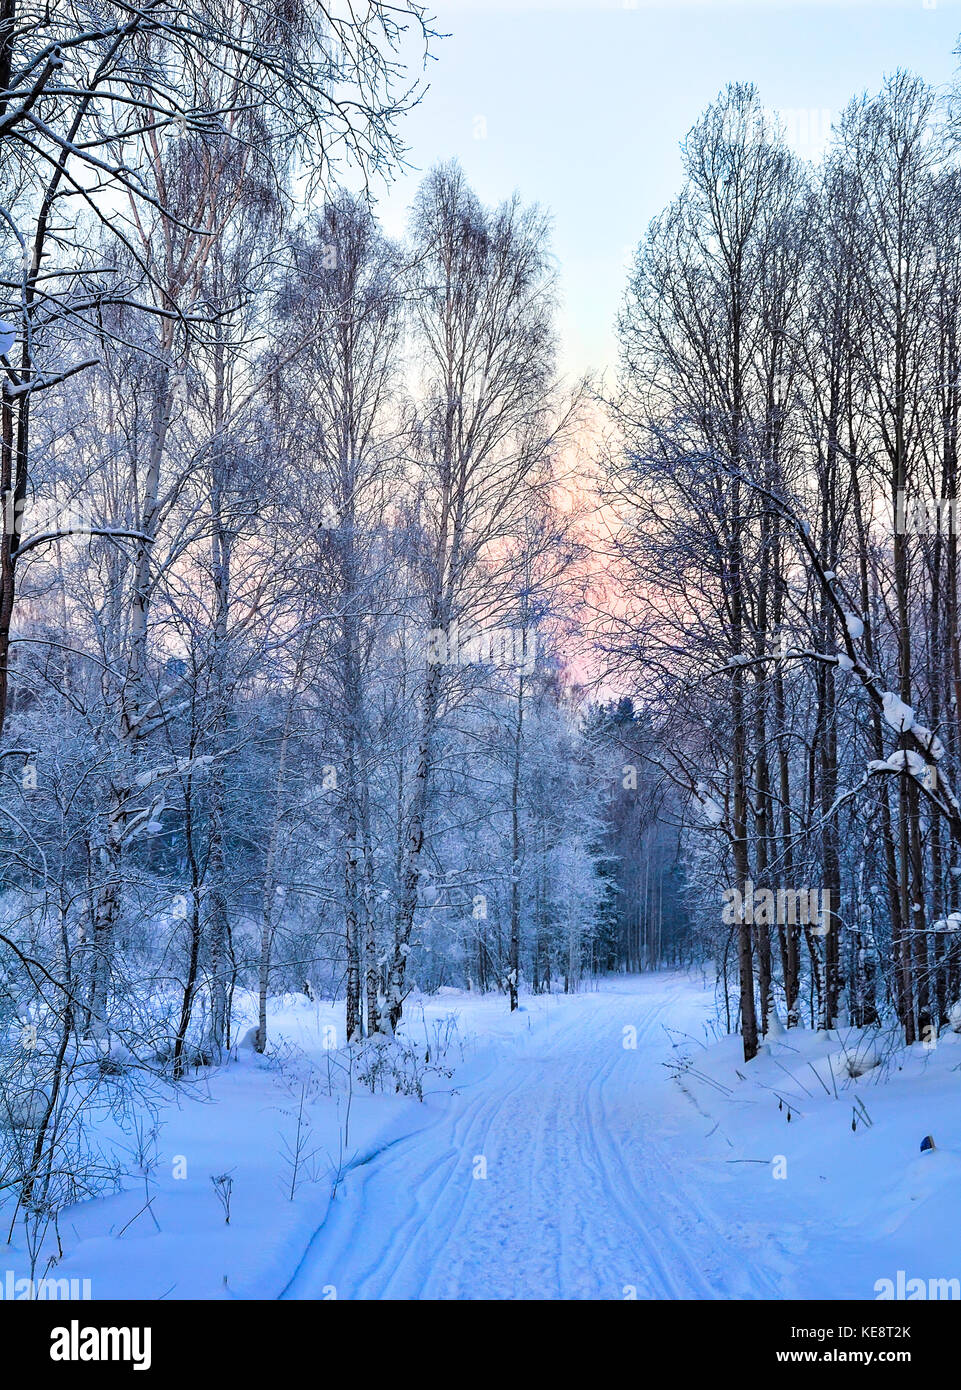 Sanfter Winter rosa Morgen auf einem verschneiten Wald Straße mit Fußspuren und Ski auf dem Schnee geht in die Ferne - Schöne weiche Farben des Winters Stockfoto